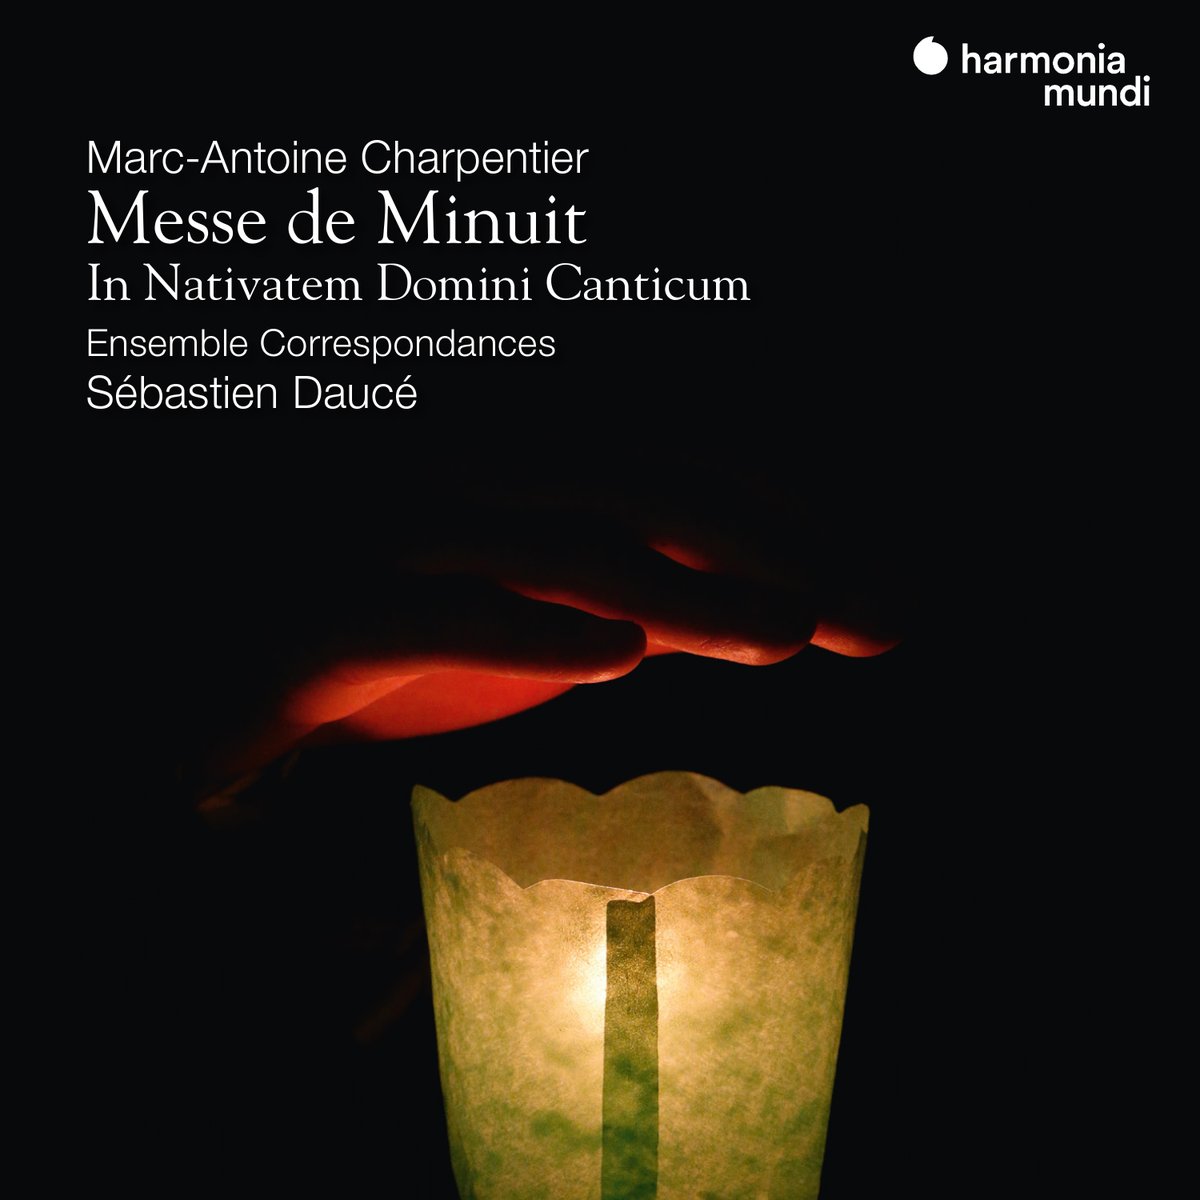 [NOUVEAU] Messe de minuit | Marc-Antoine Charpentier @Correspondances Sébastien Daucé 🎼Ecouter:lnk.to/CharpentierMin… 👉Teaser Youtube: youtu.be/Dwpr4SWNj50